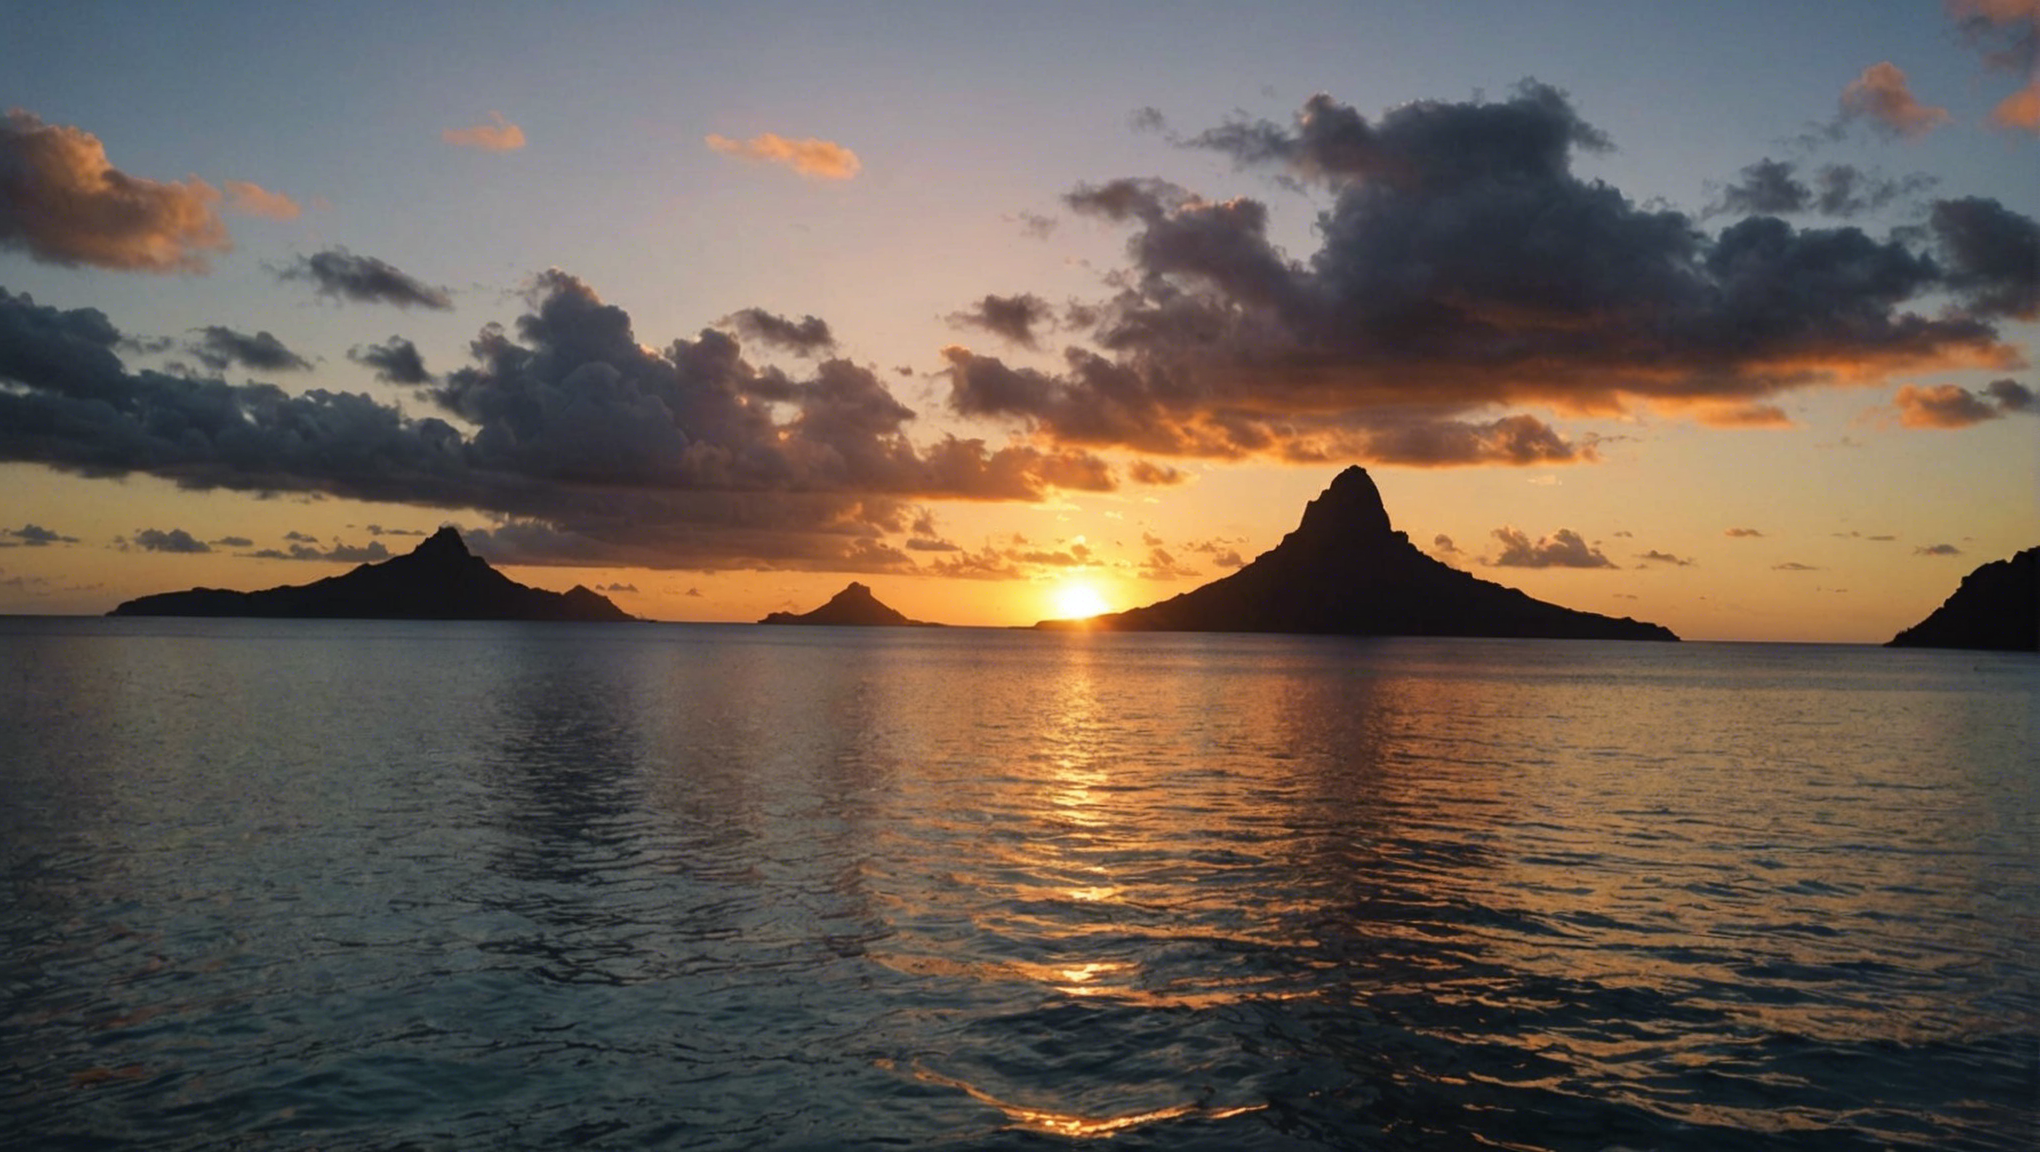 découvrez les plus beaux spots de tahiti pour contempler un coucher de soleil romantique. profitez d'une expérience inoubliable dans ce cadre paradisiaque.